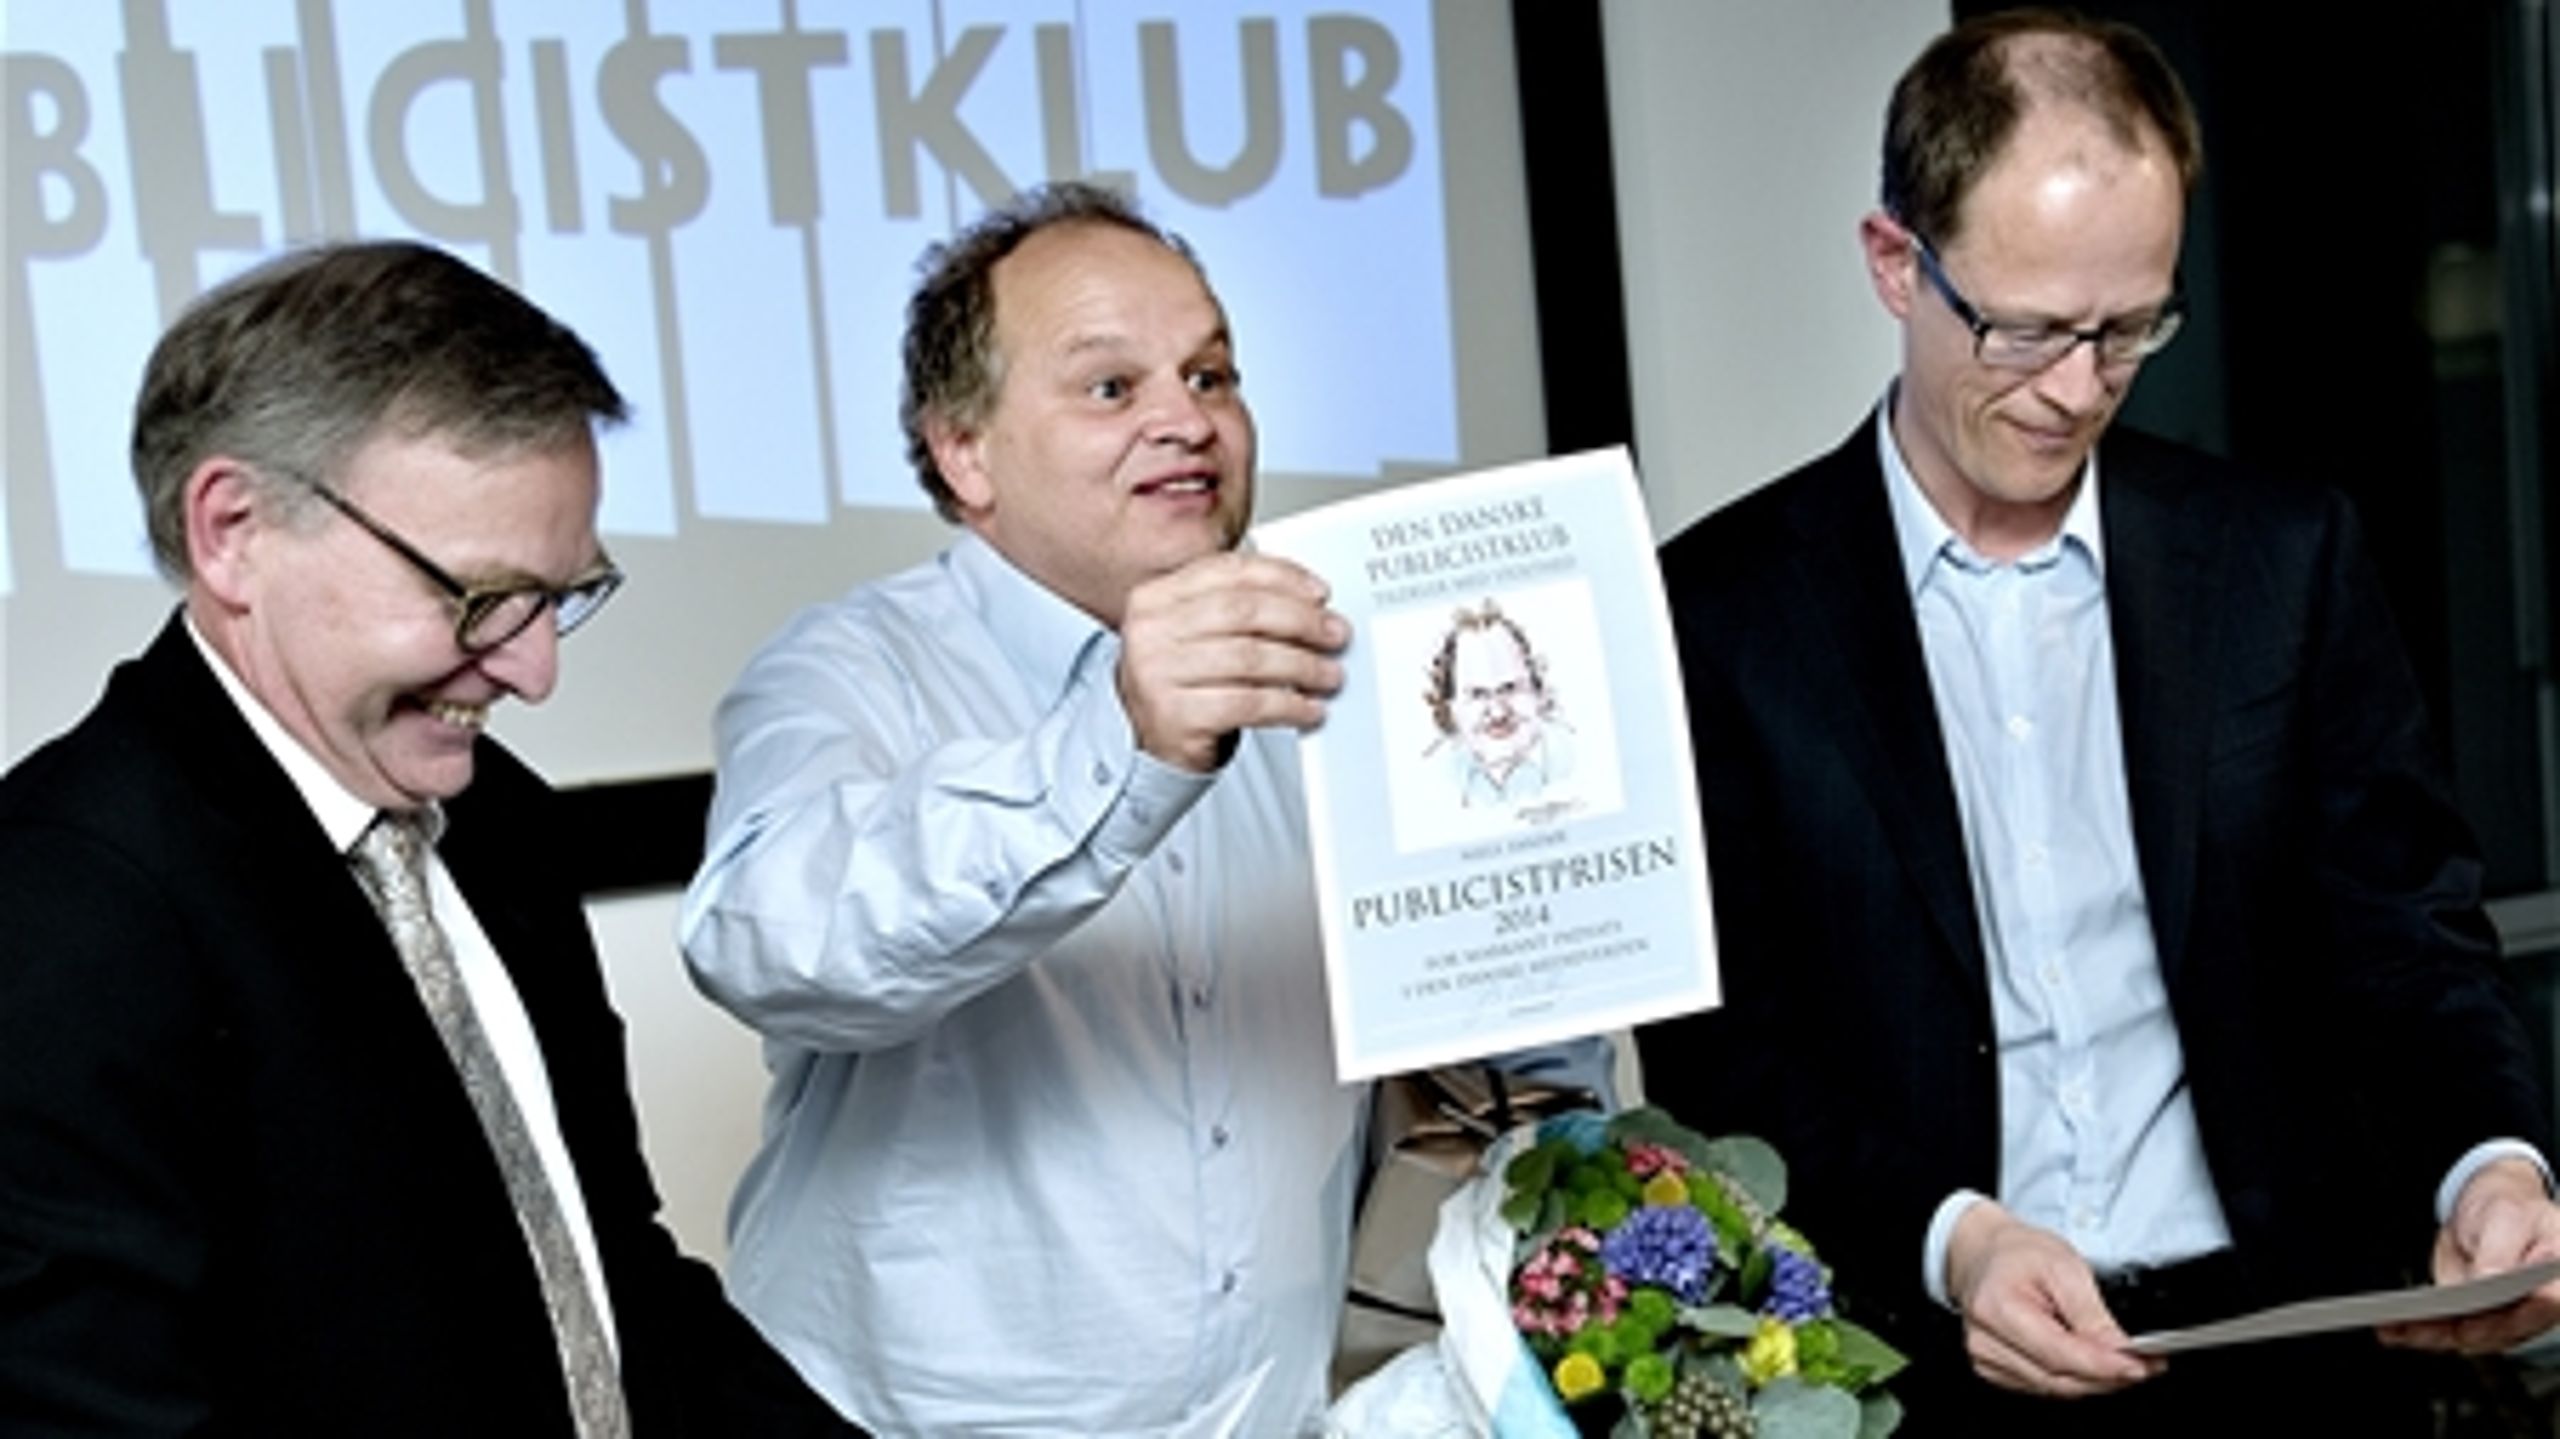 Niels Sandøe og Thomas Svaneborg modtager Publicistprisen.